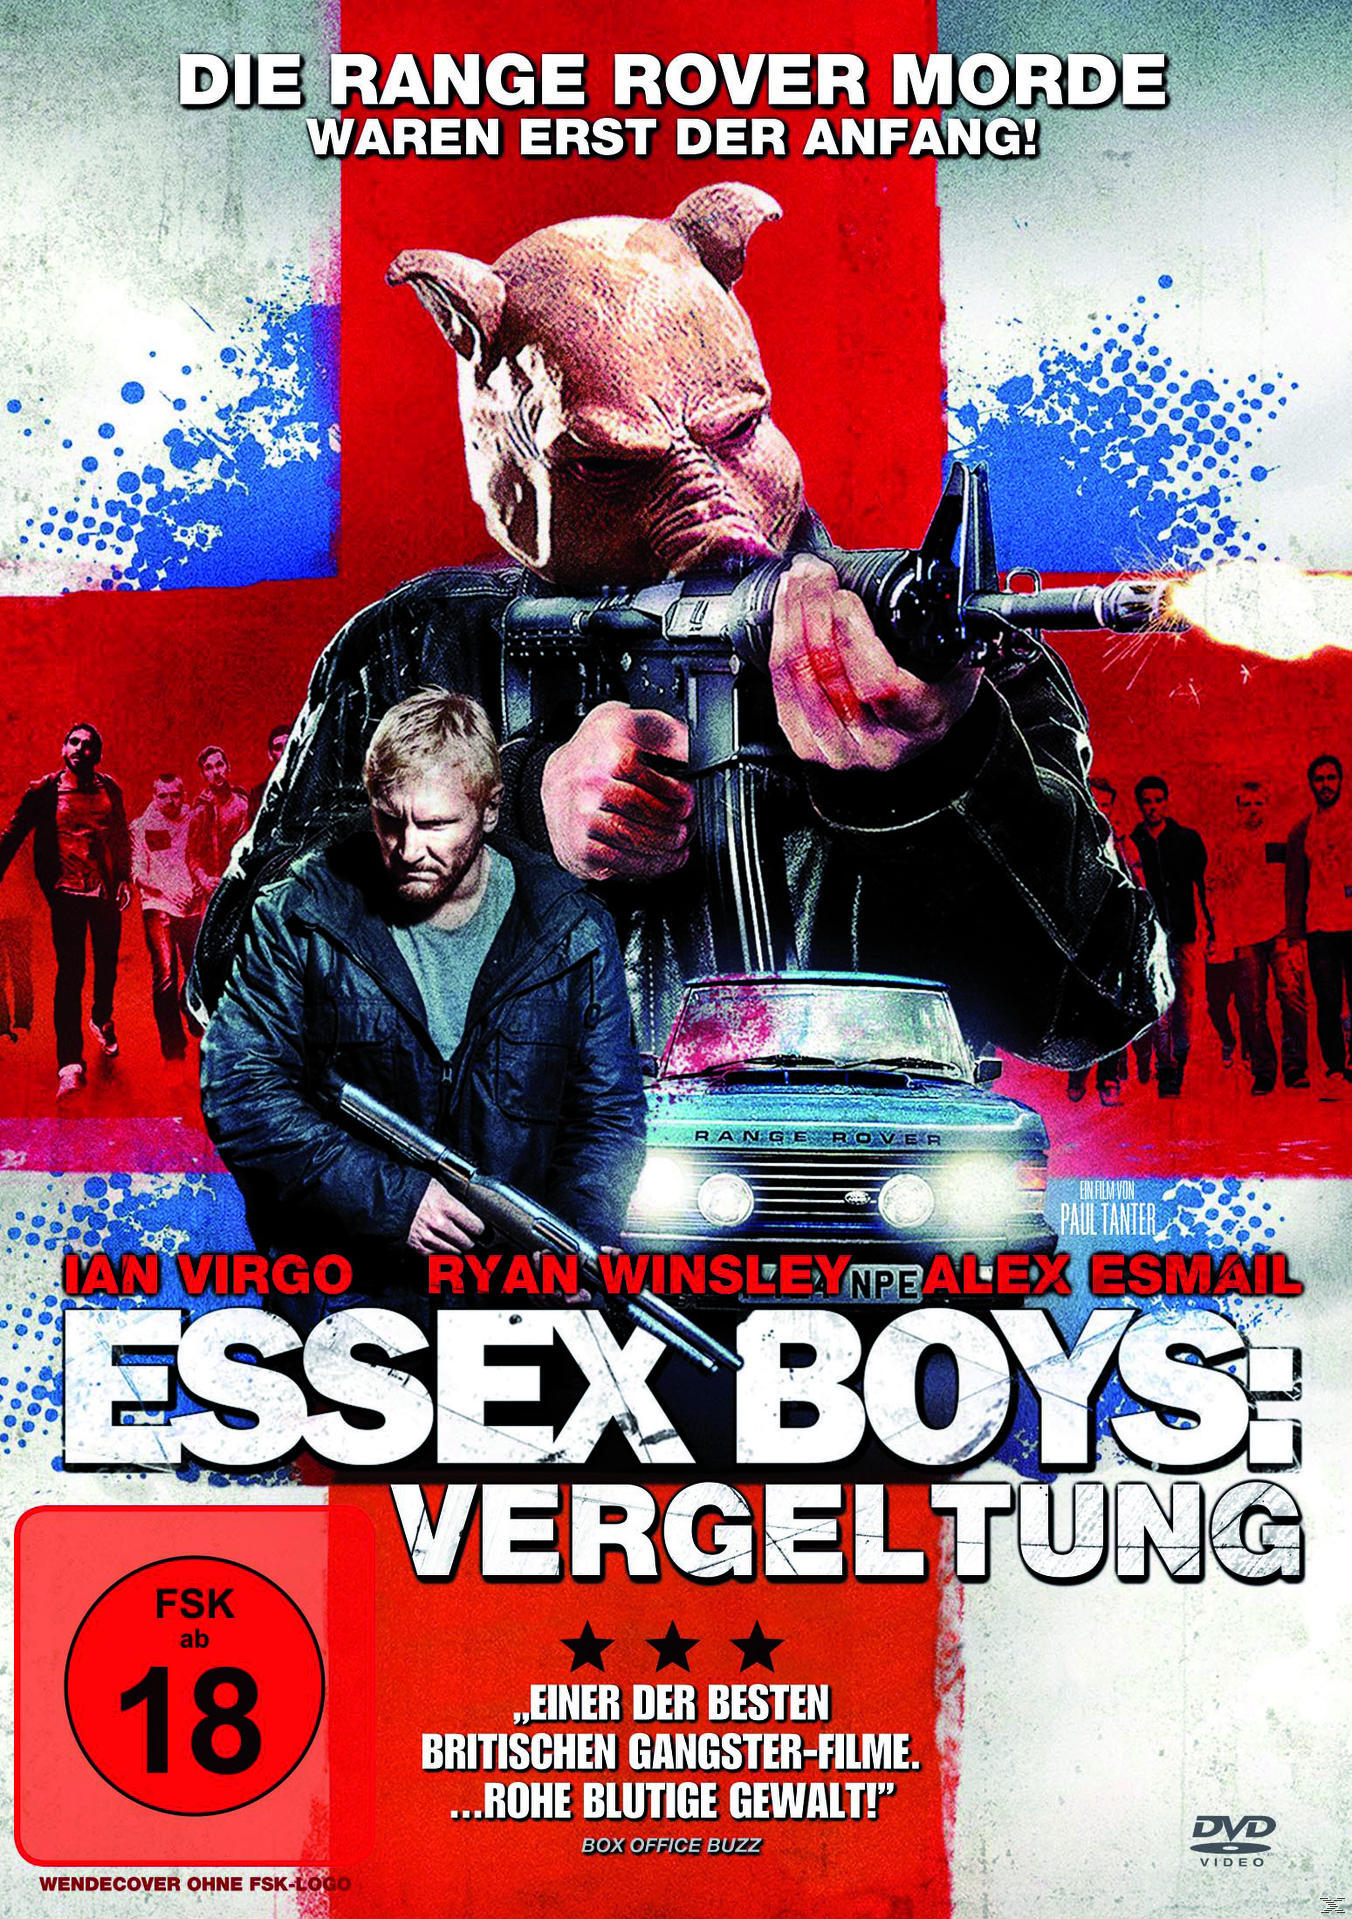 Essex Vergeltung DVD Boys: